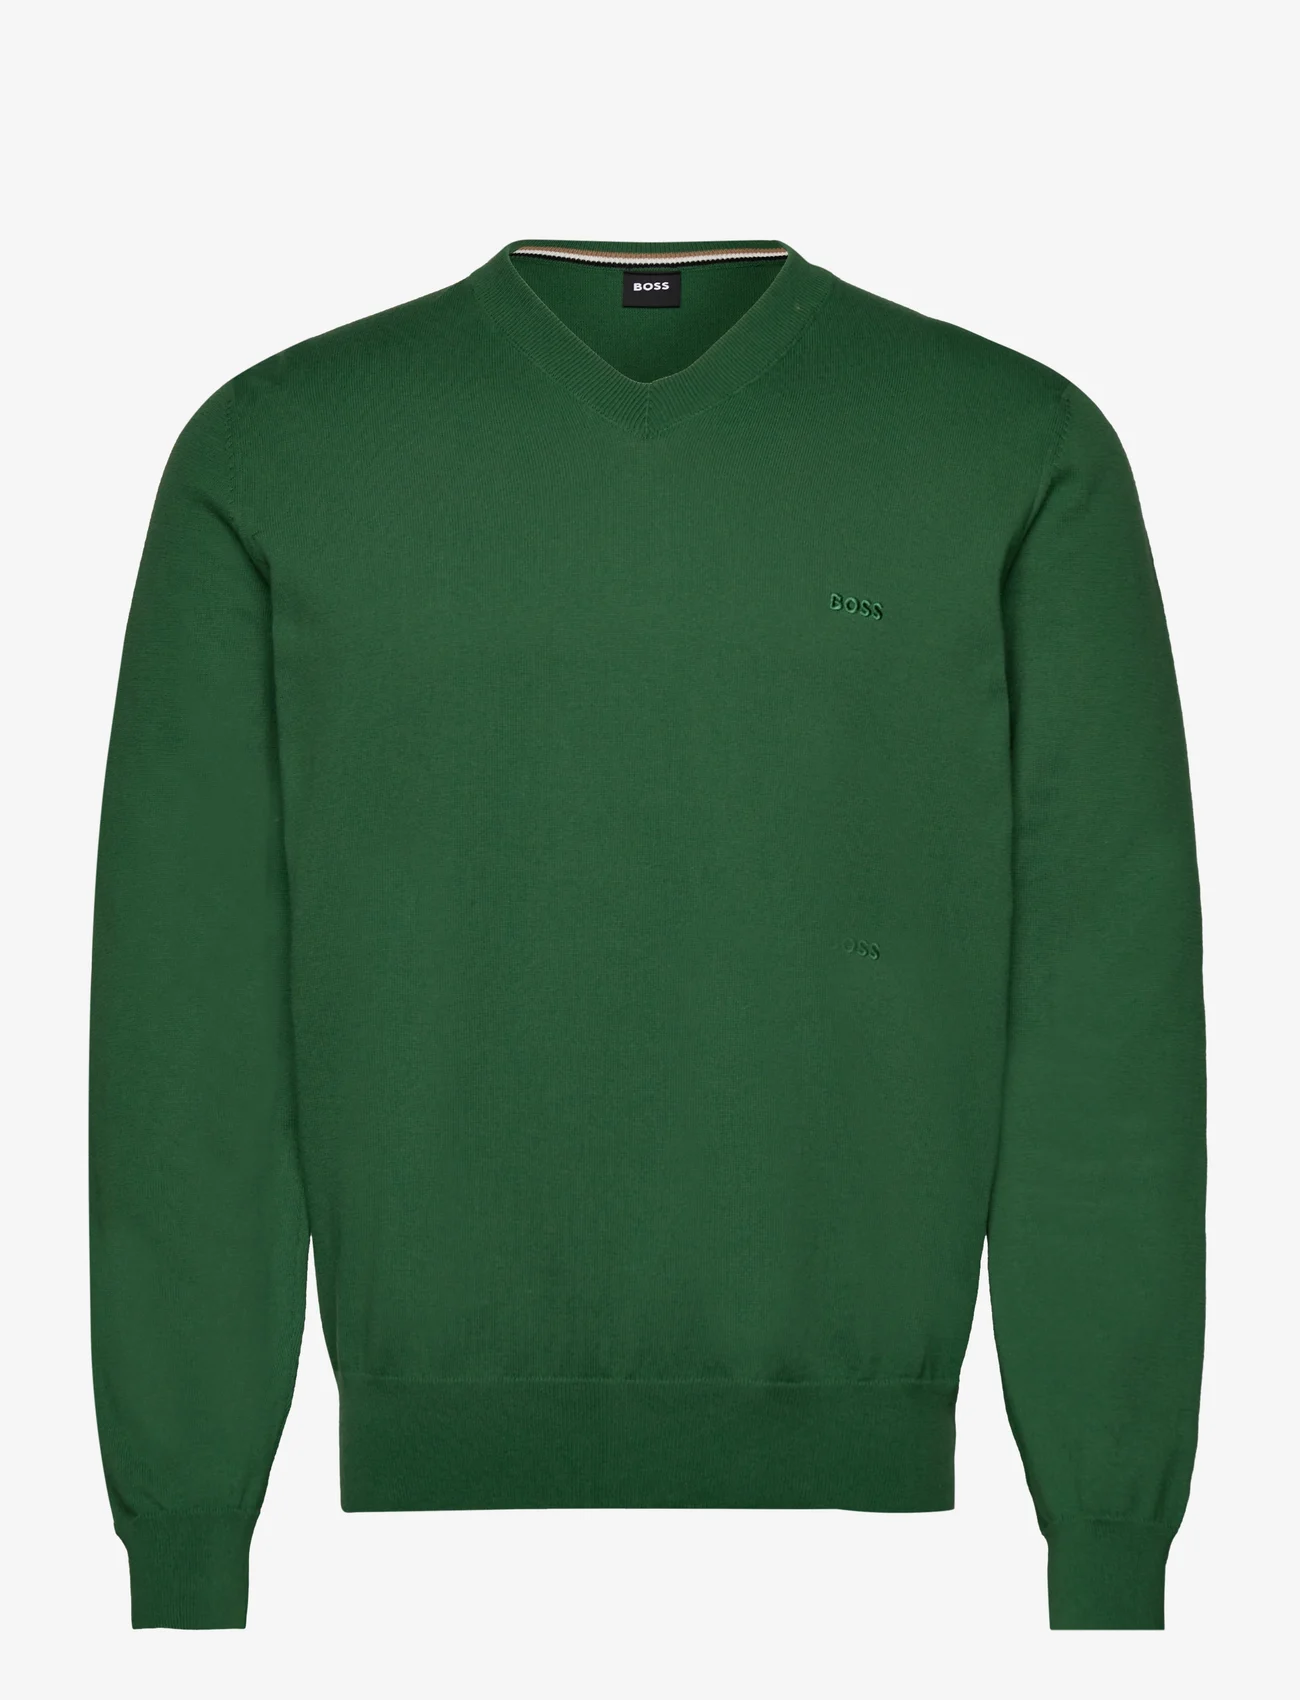 BOSS - Pacello-L - knitted v-necks - open green - 0